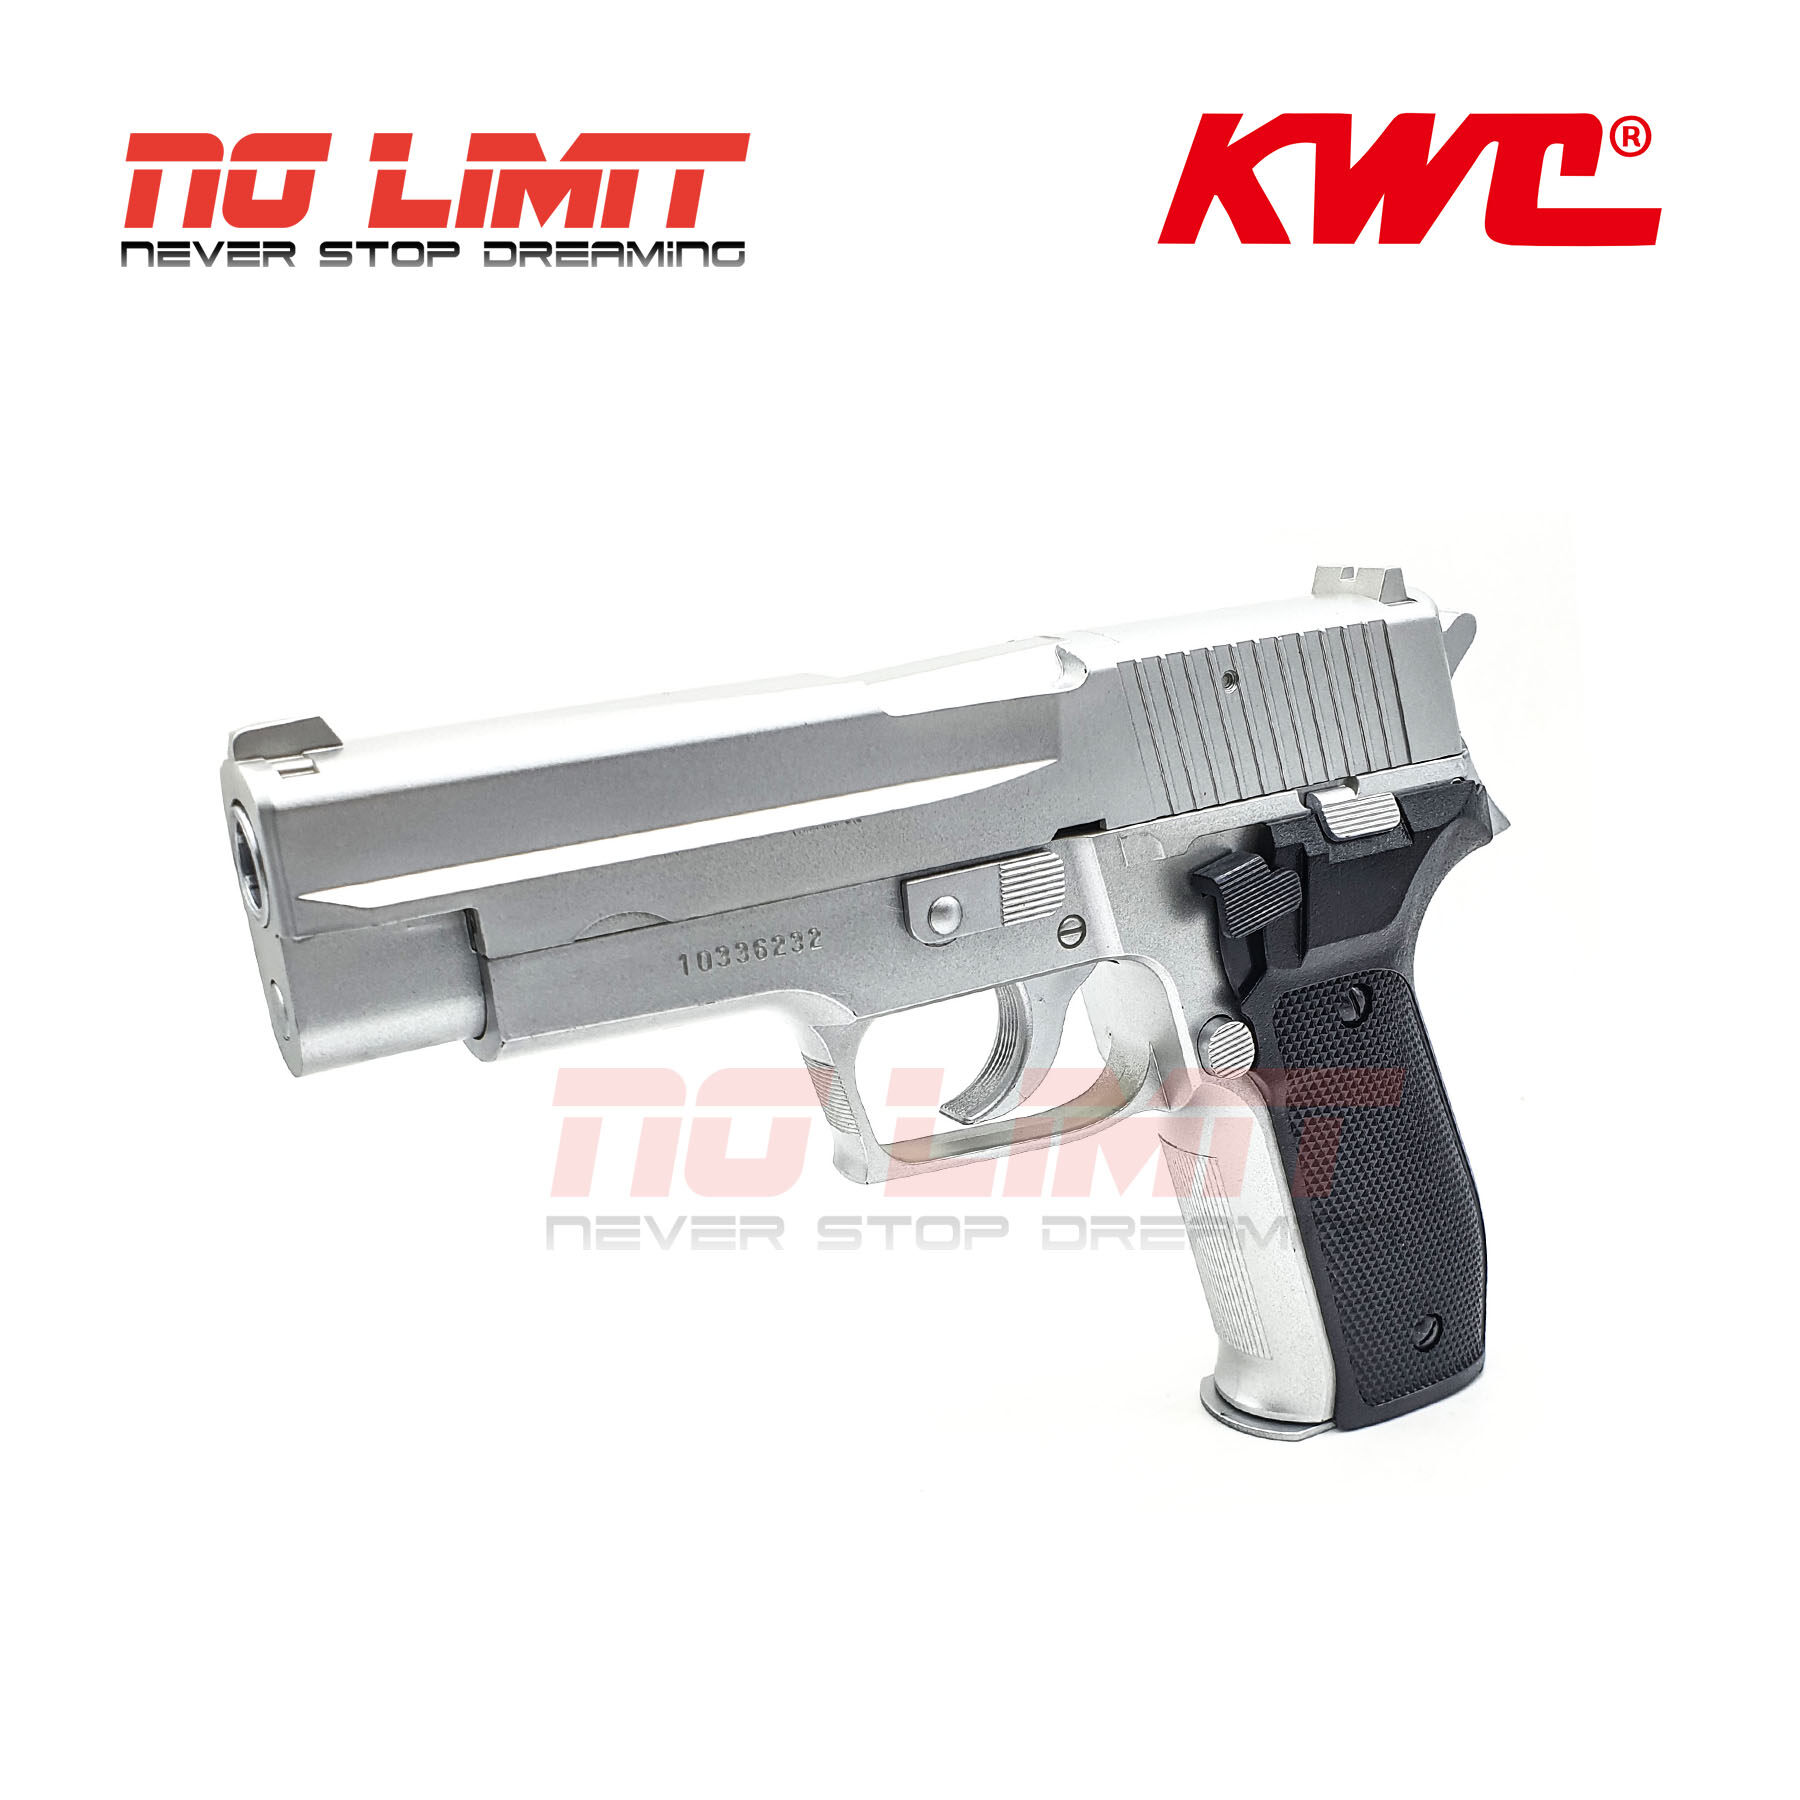 ปืนอัดลมสปริง Kwc 226 โมเดล Sig Sauer P226 สีเงิน (silver) Made In Taiwan ง้างนกได้ มีระบบเซฟไก ชักยิงทีละนัด ขนาดสมจริง 1:1 วัสดุพลาสติก ปืนโมเดล ปืนบีบีกัน. 